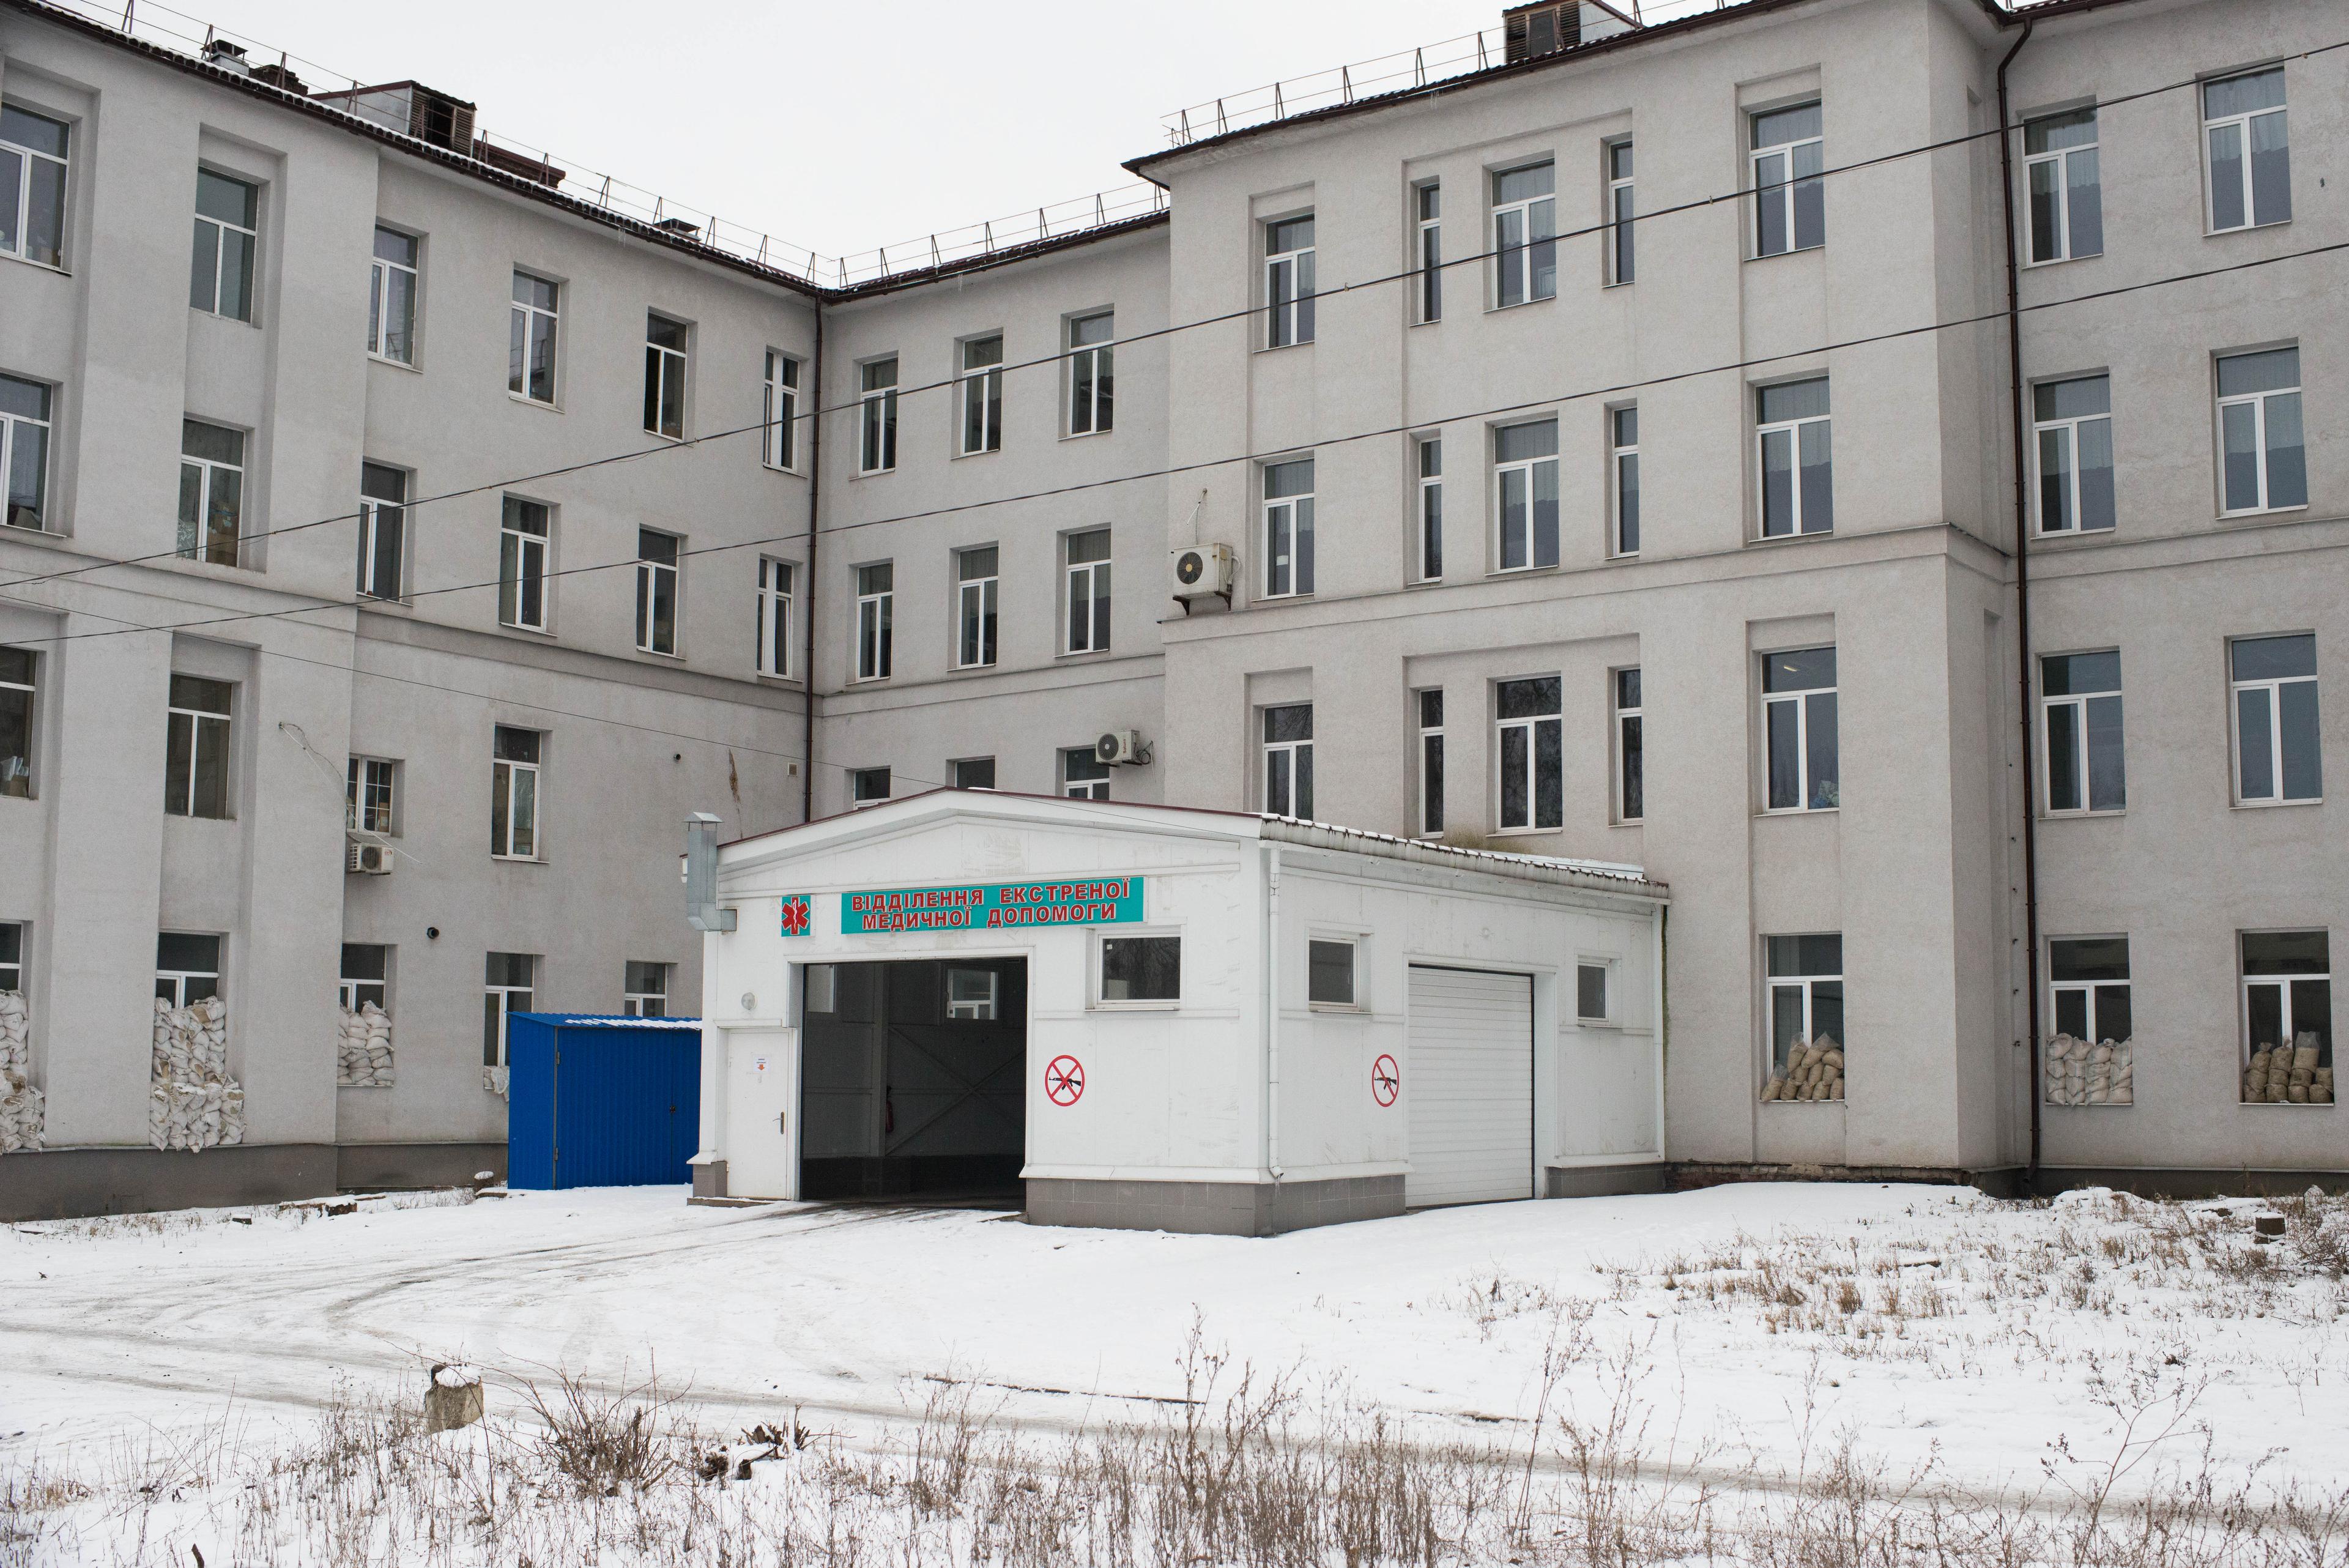 Kostyantynivka hospital. Donetsk Oblast, Ukraine. 